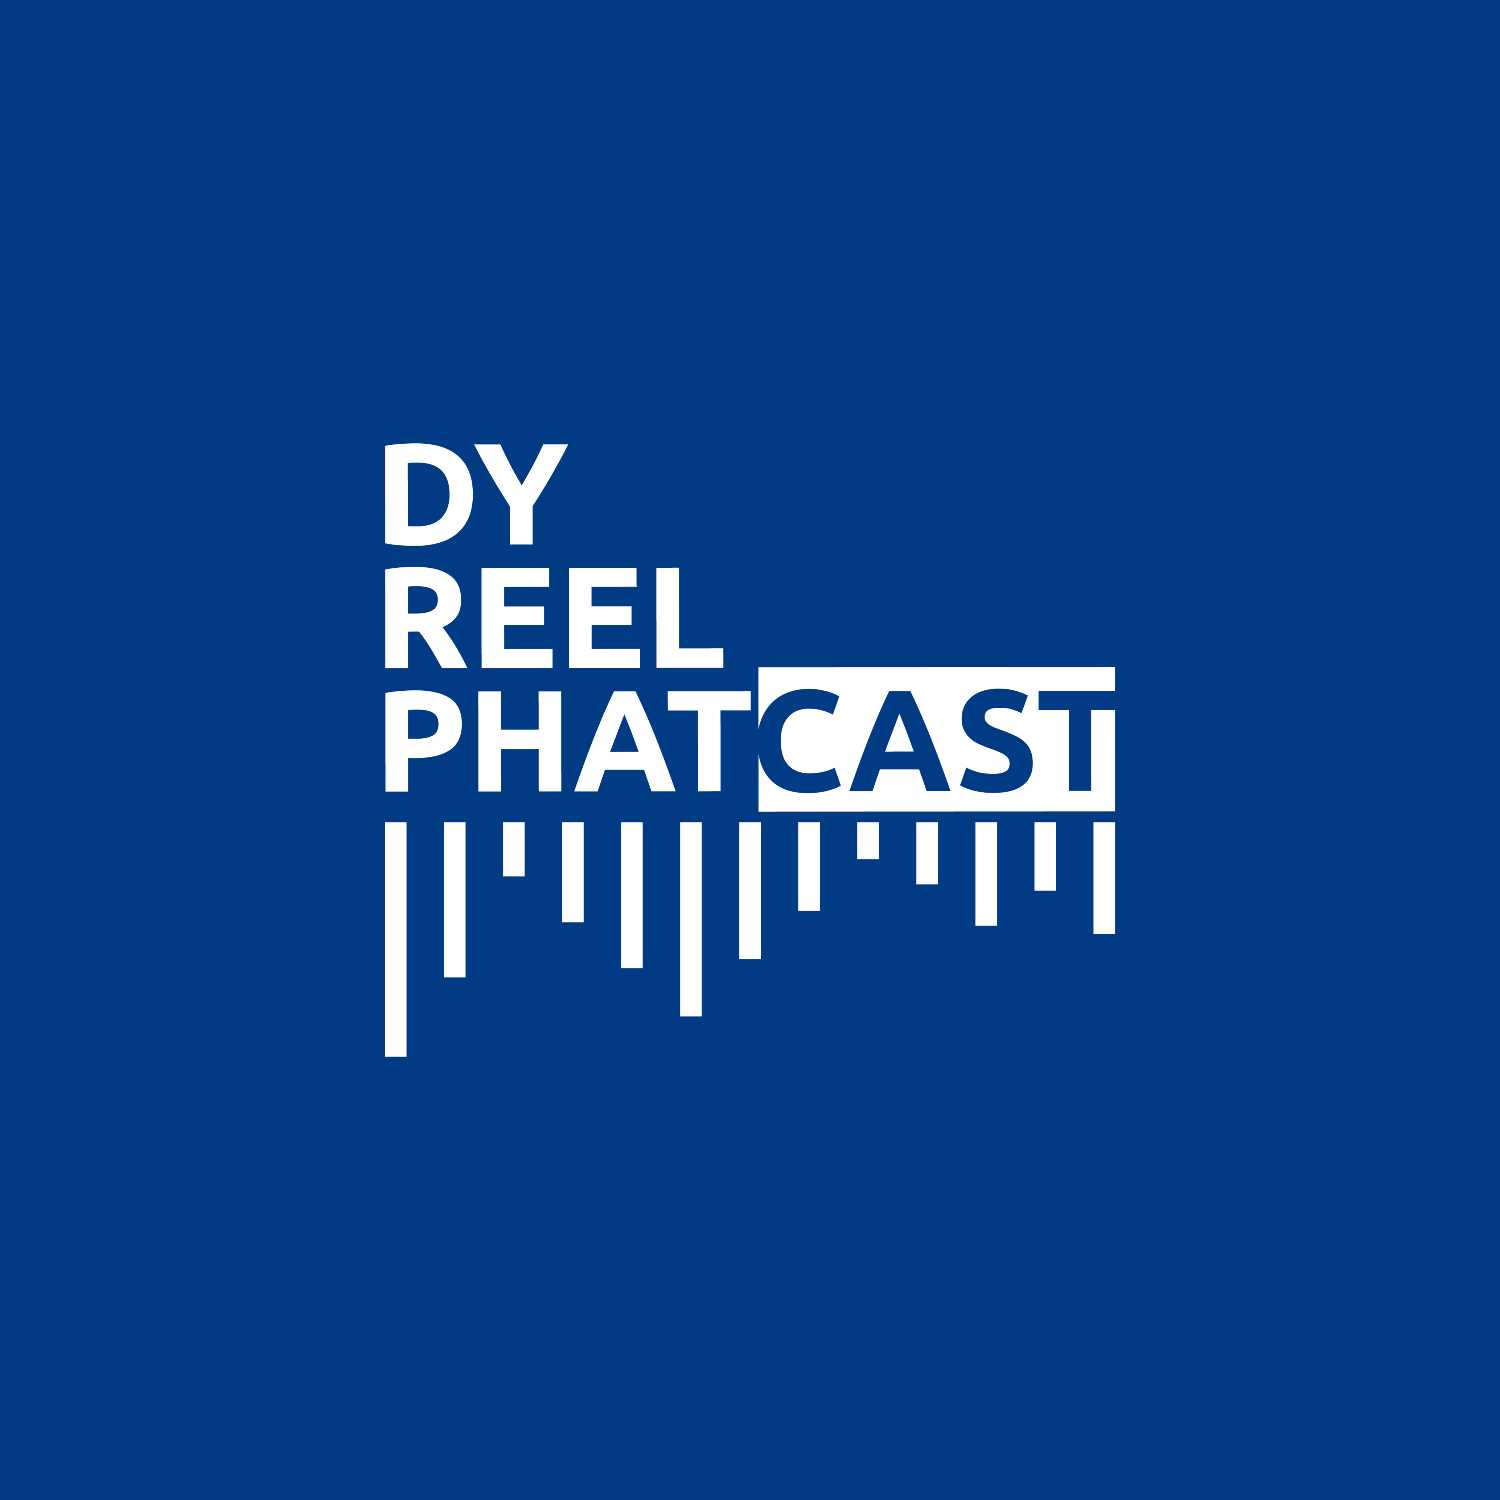 DyReelPhatcast